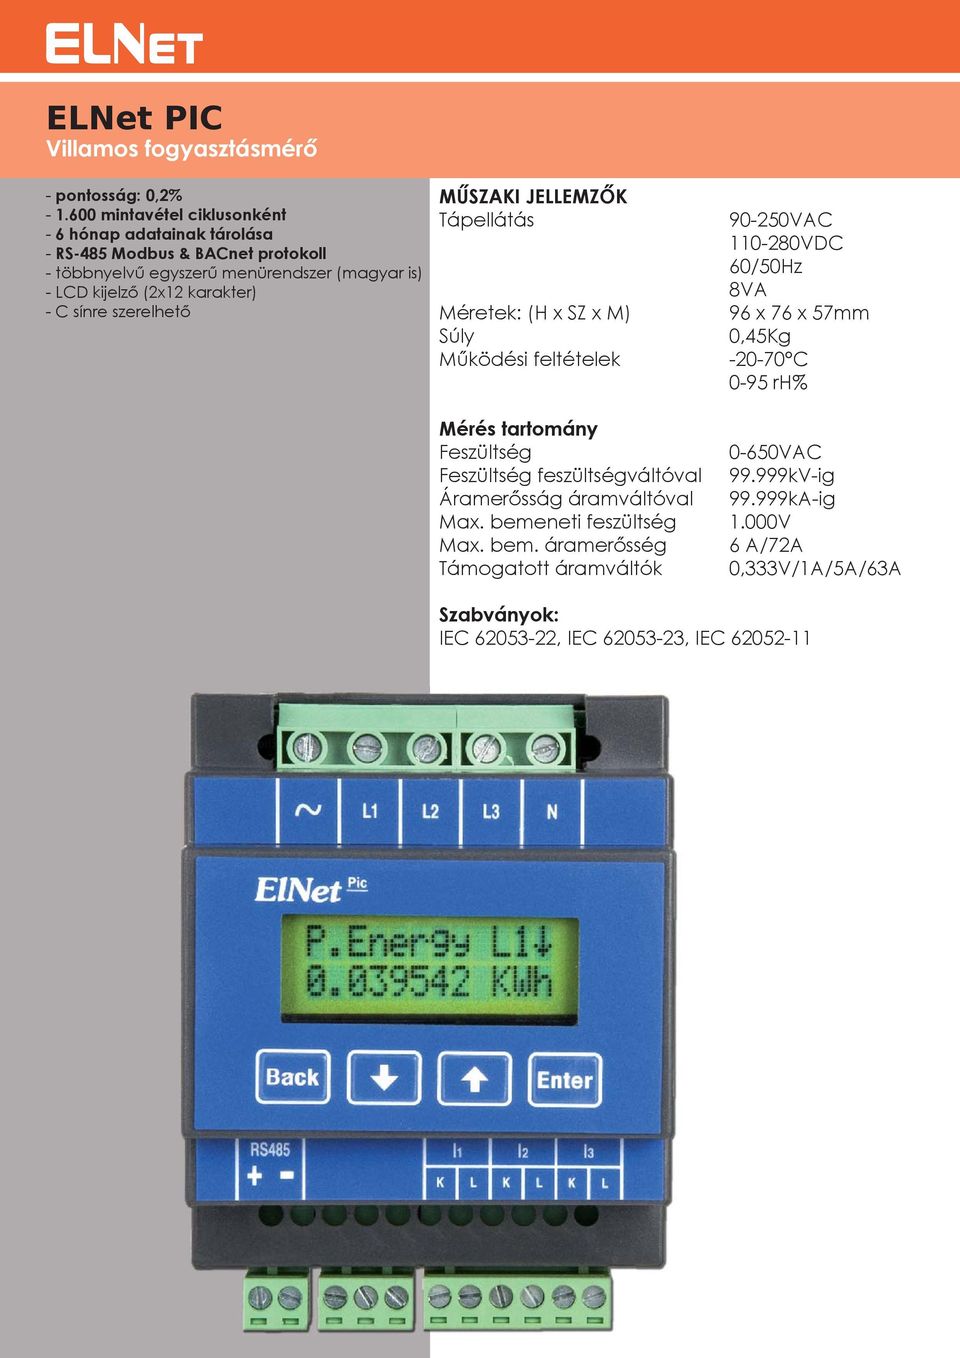 többnyelvű egyszerű menürendszer (magyar is) - LCD kijelző (2x12 karakter) - C sínre szerelhető 96 x